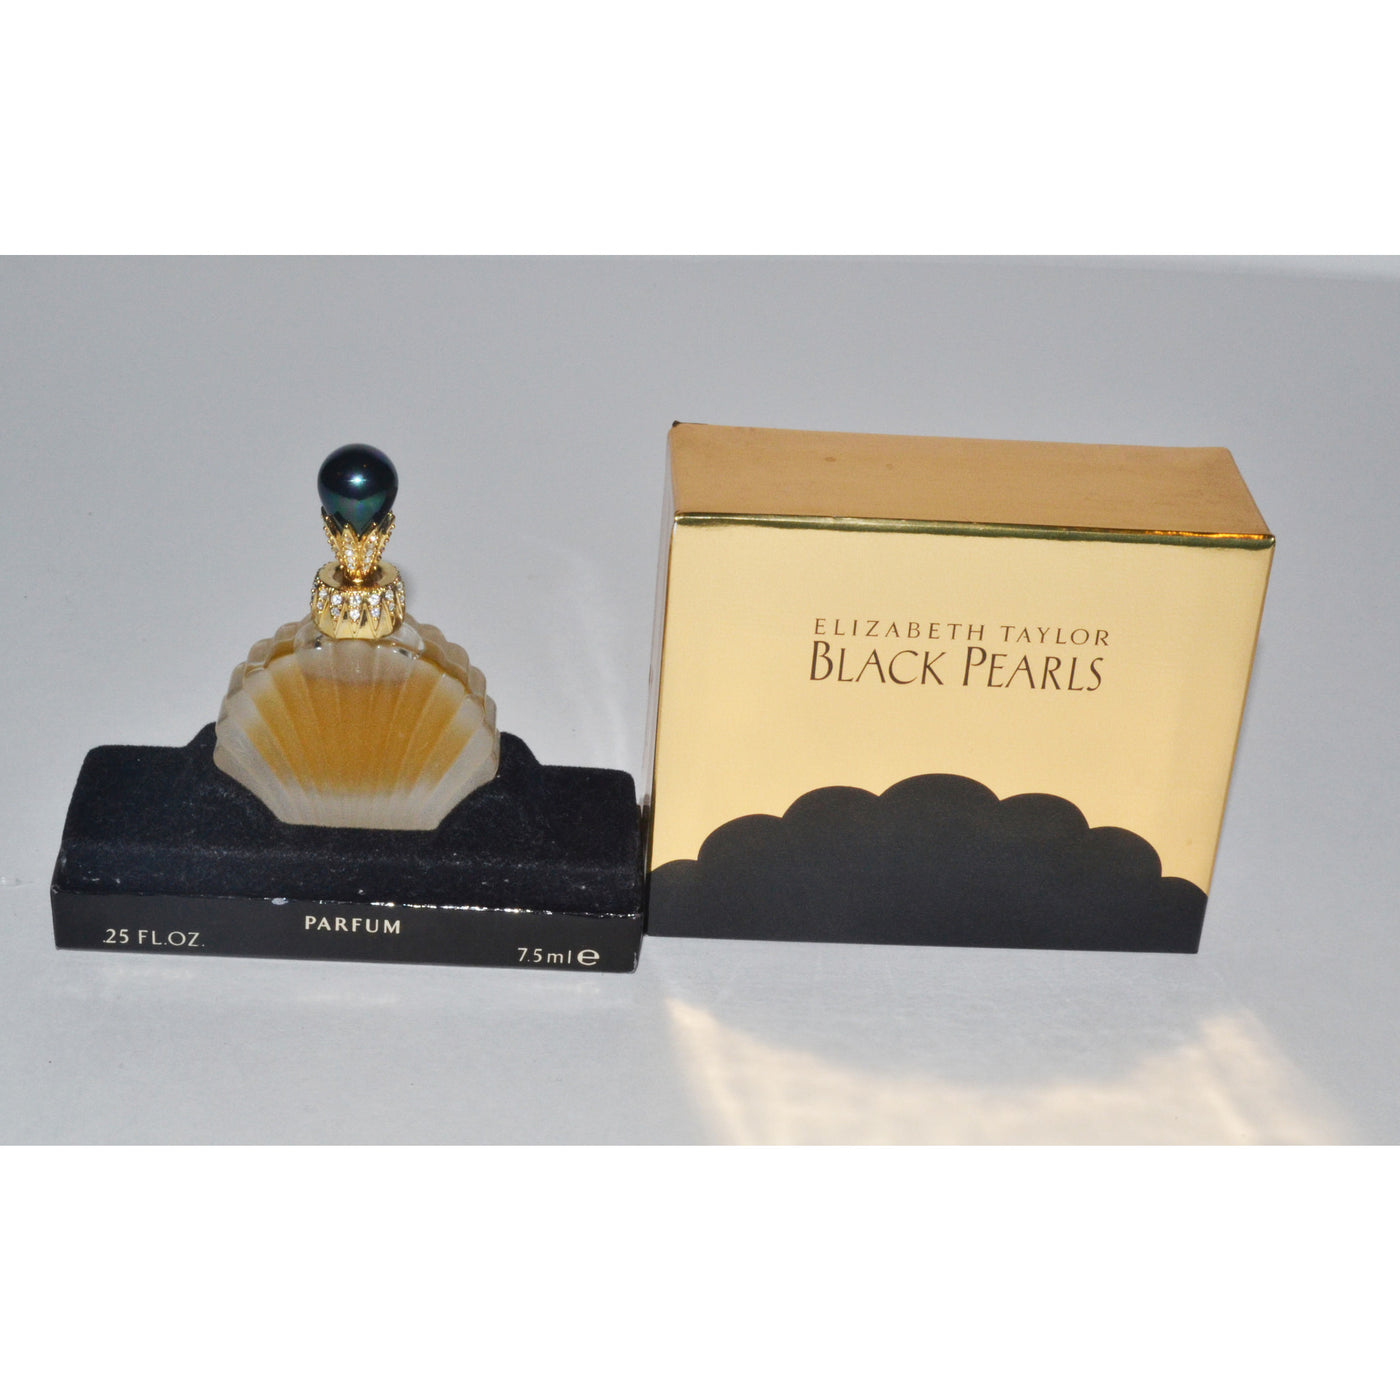 Original Black Pearls Parfum By Elizabeth Taylor